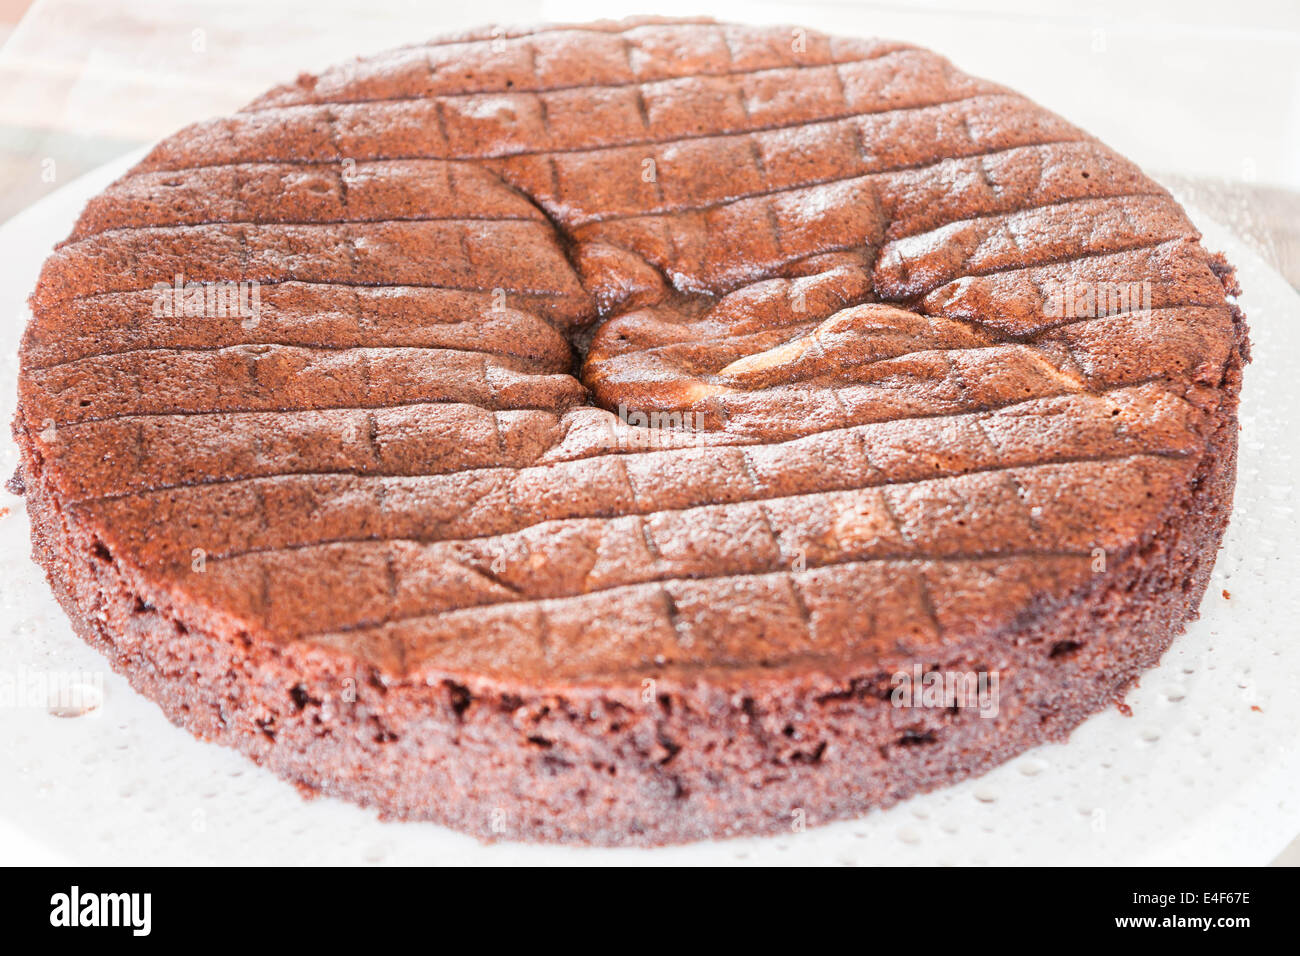 Capa superior de chiffon tarta de chocolate rociado ron Foto de stock